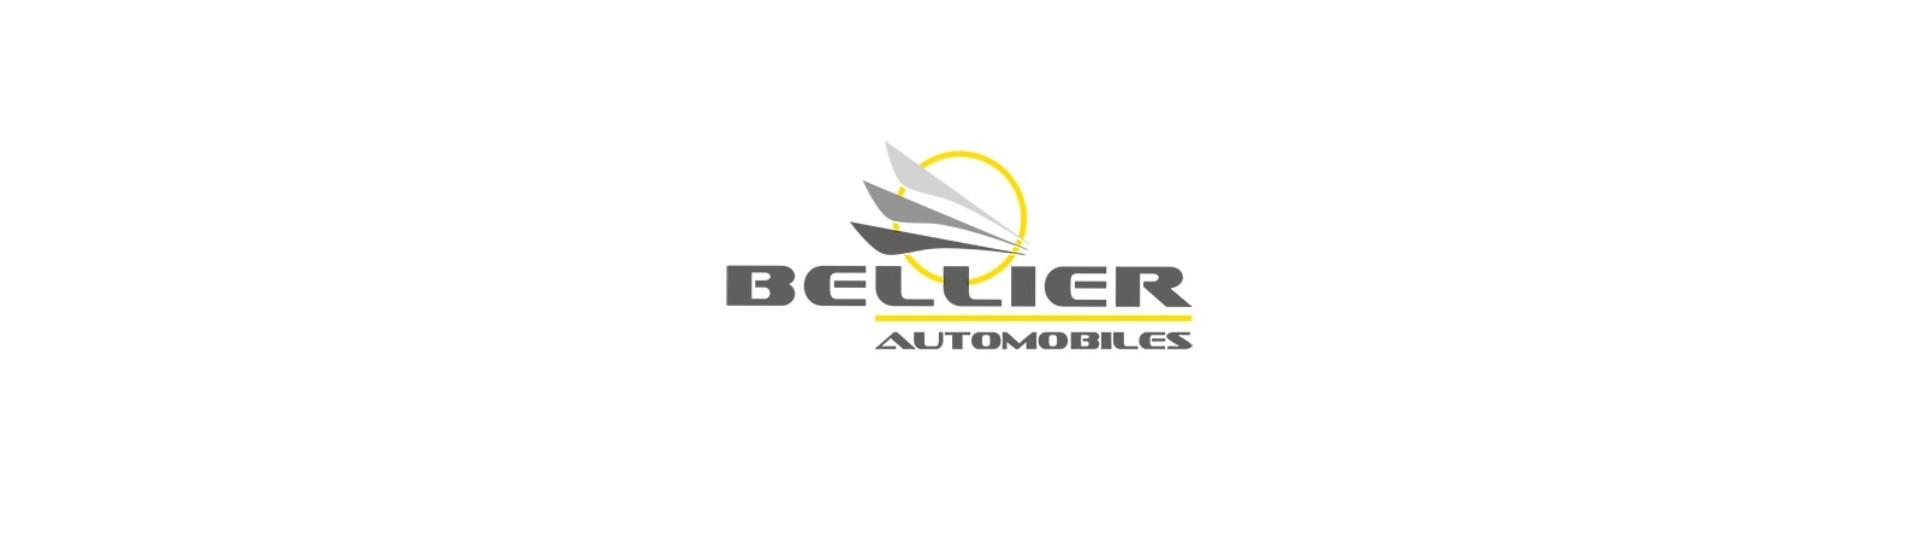 Fälgobjektiv till bästa pris för en bil utan körkort Bellier